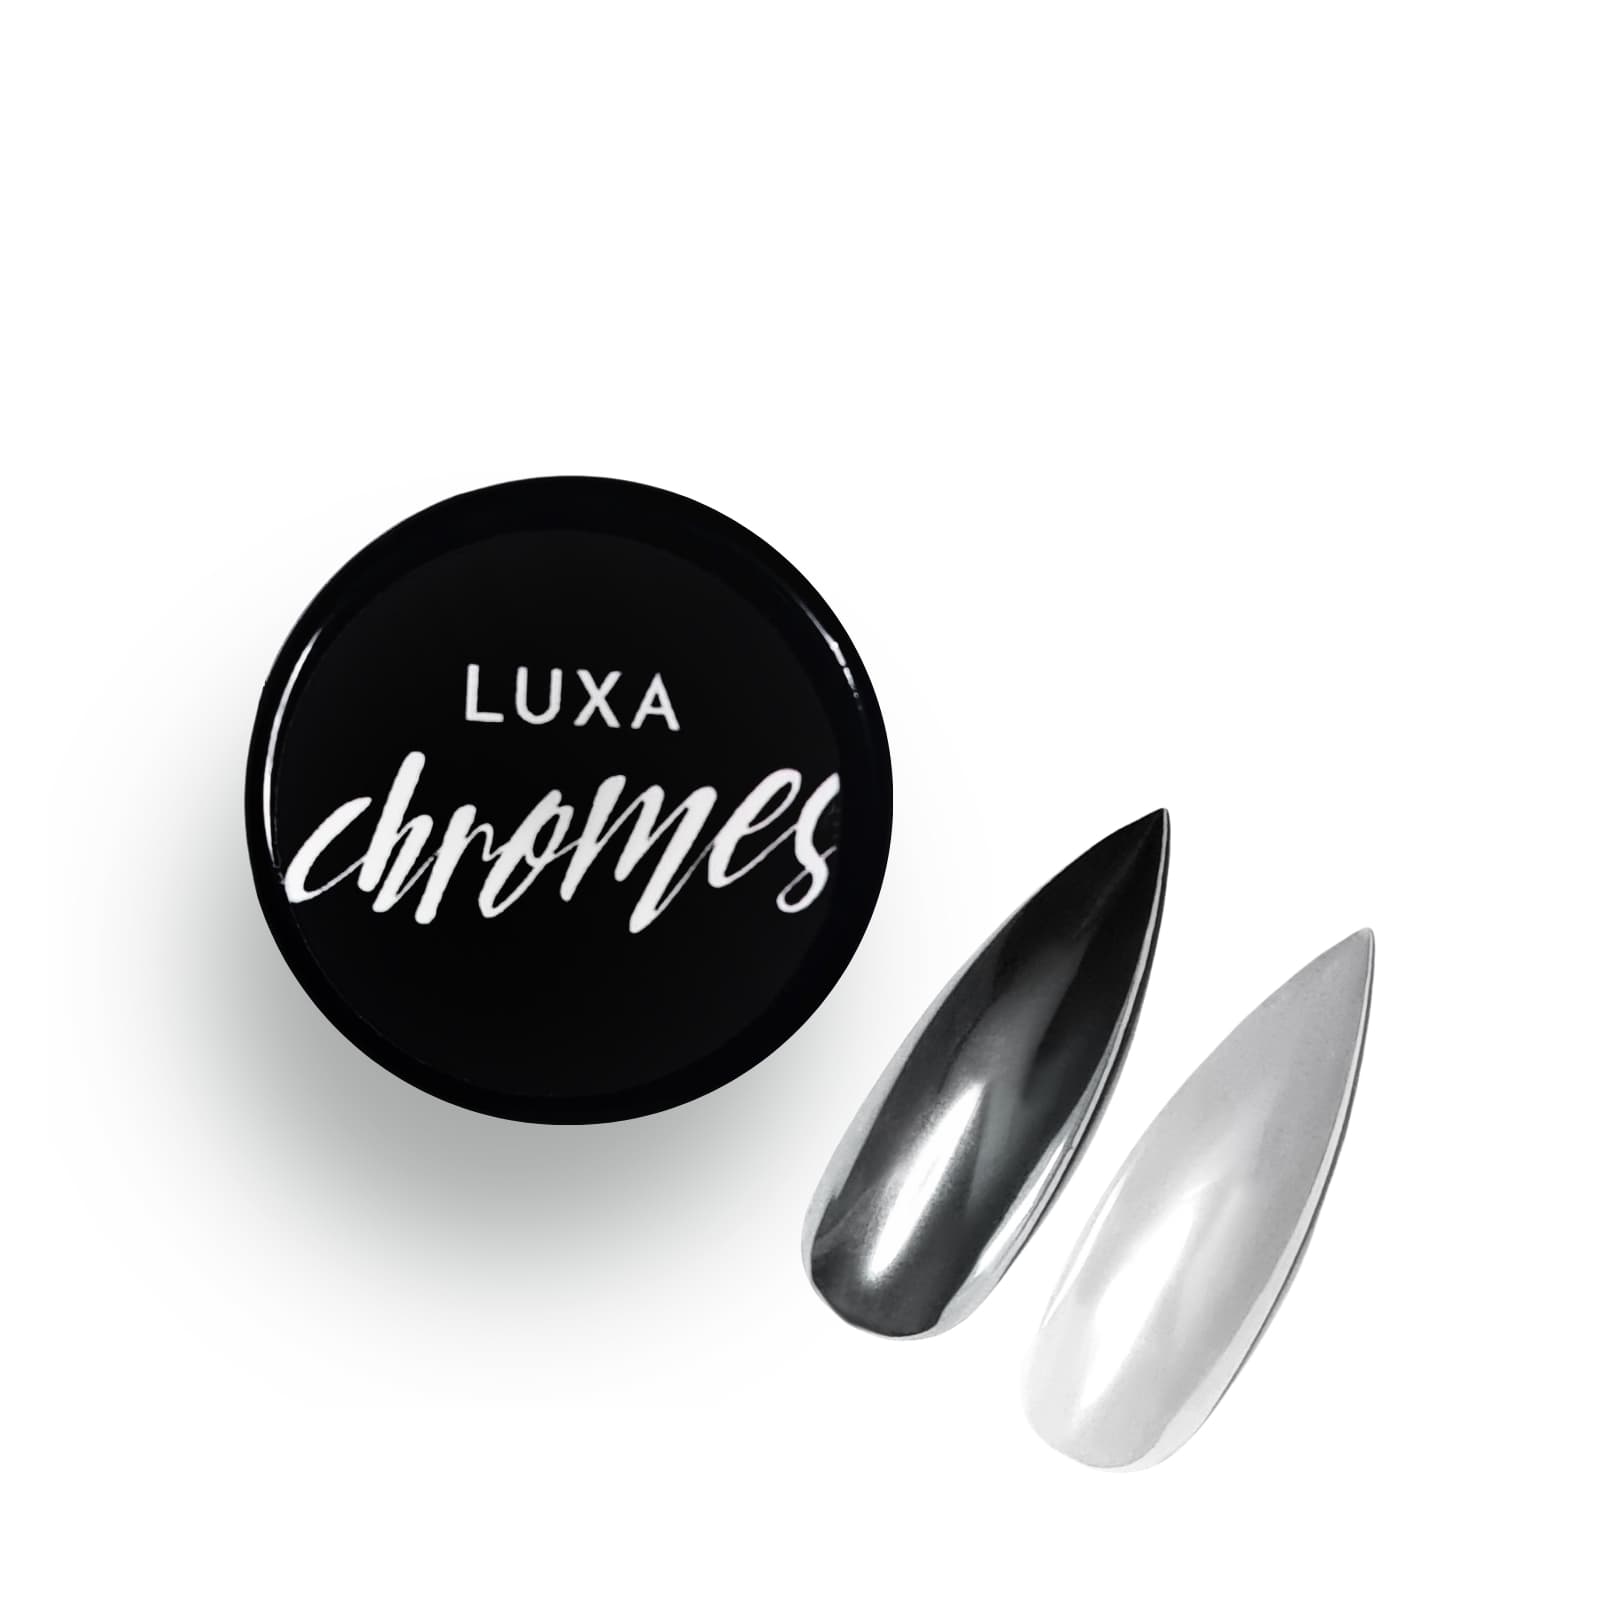 Luxapolish Ultra White Chrome